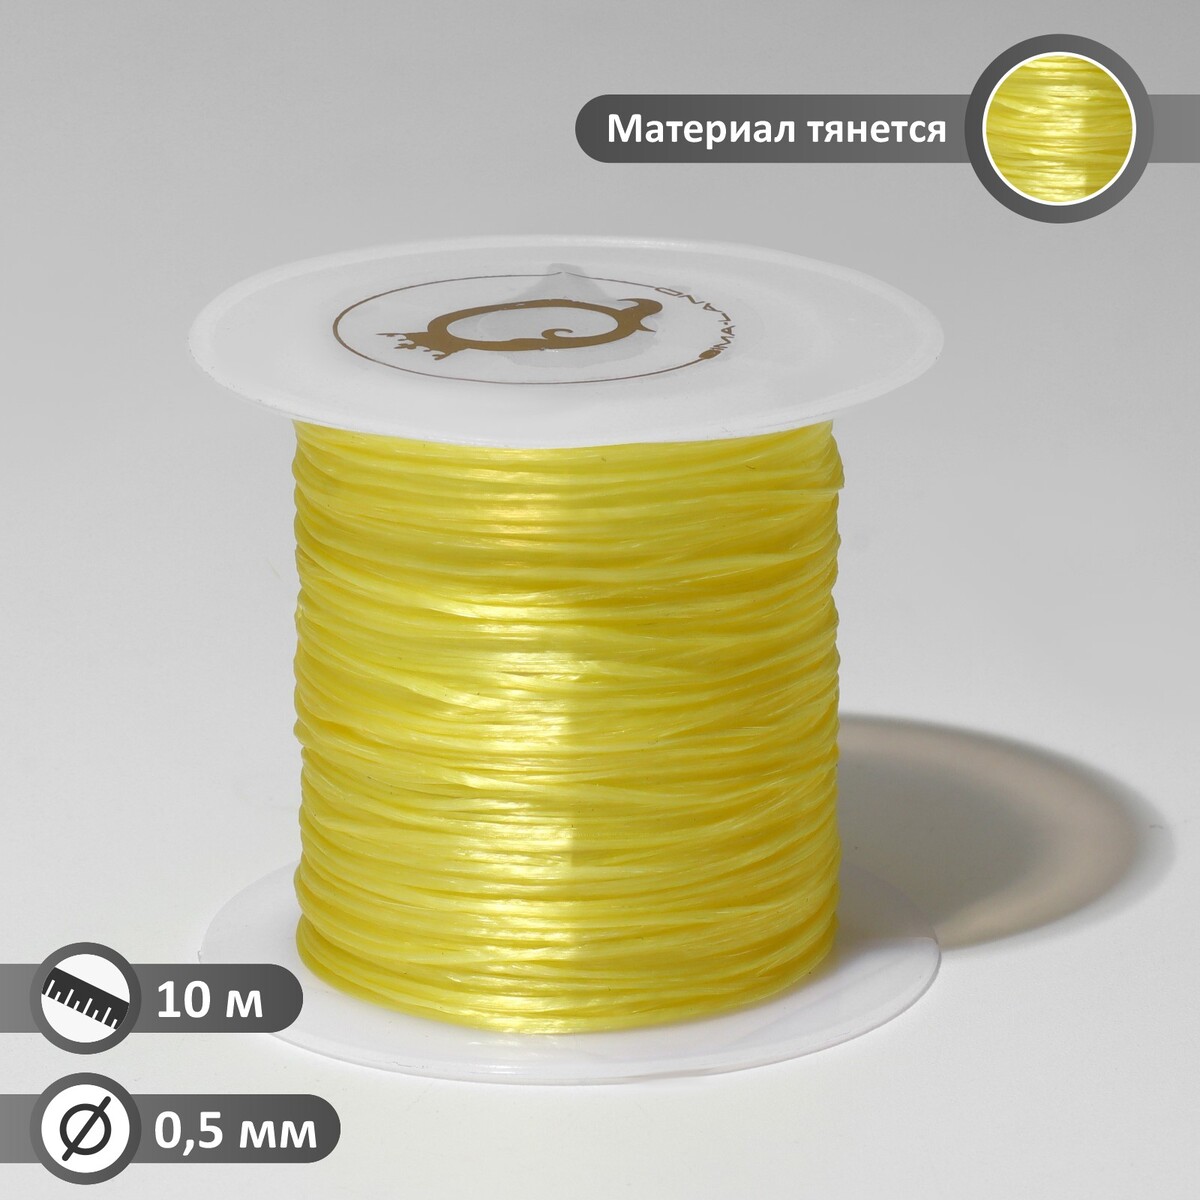 Нить силиконовая (резинка) d=0,5 мм, l=10 м (прочность 2250 денье), цвет желтый нить силиконовая резинка d 0 5мм l 10м прочность 2250 денье